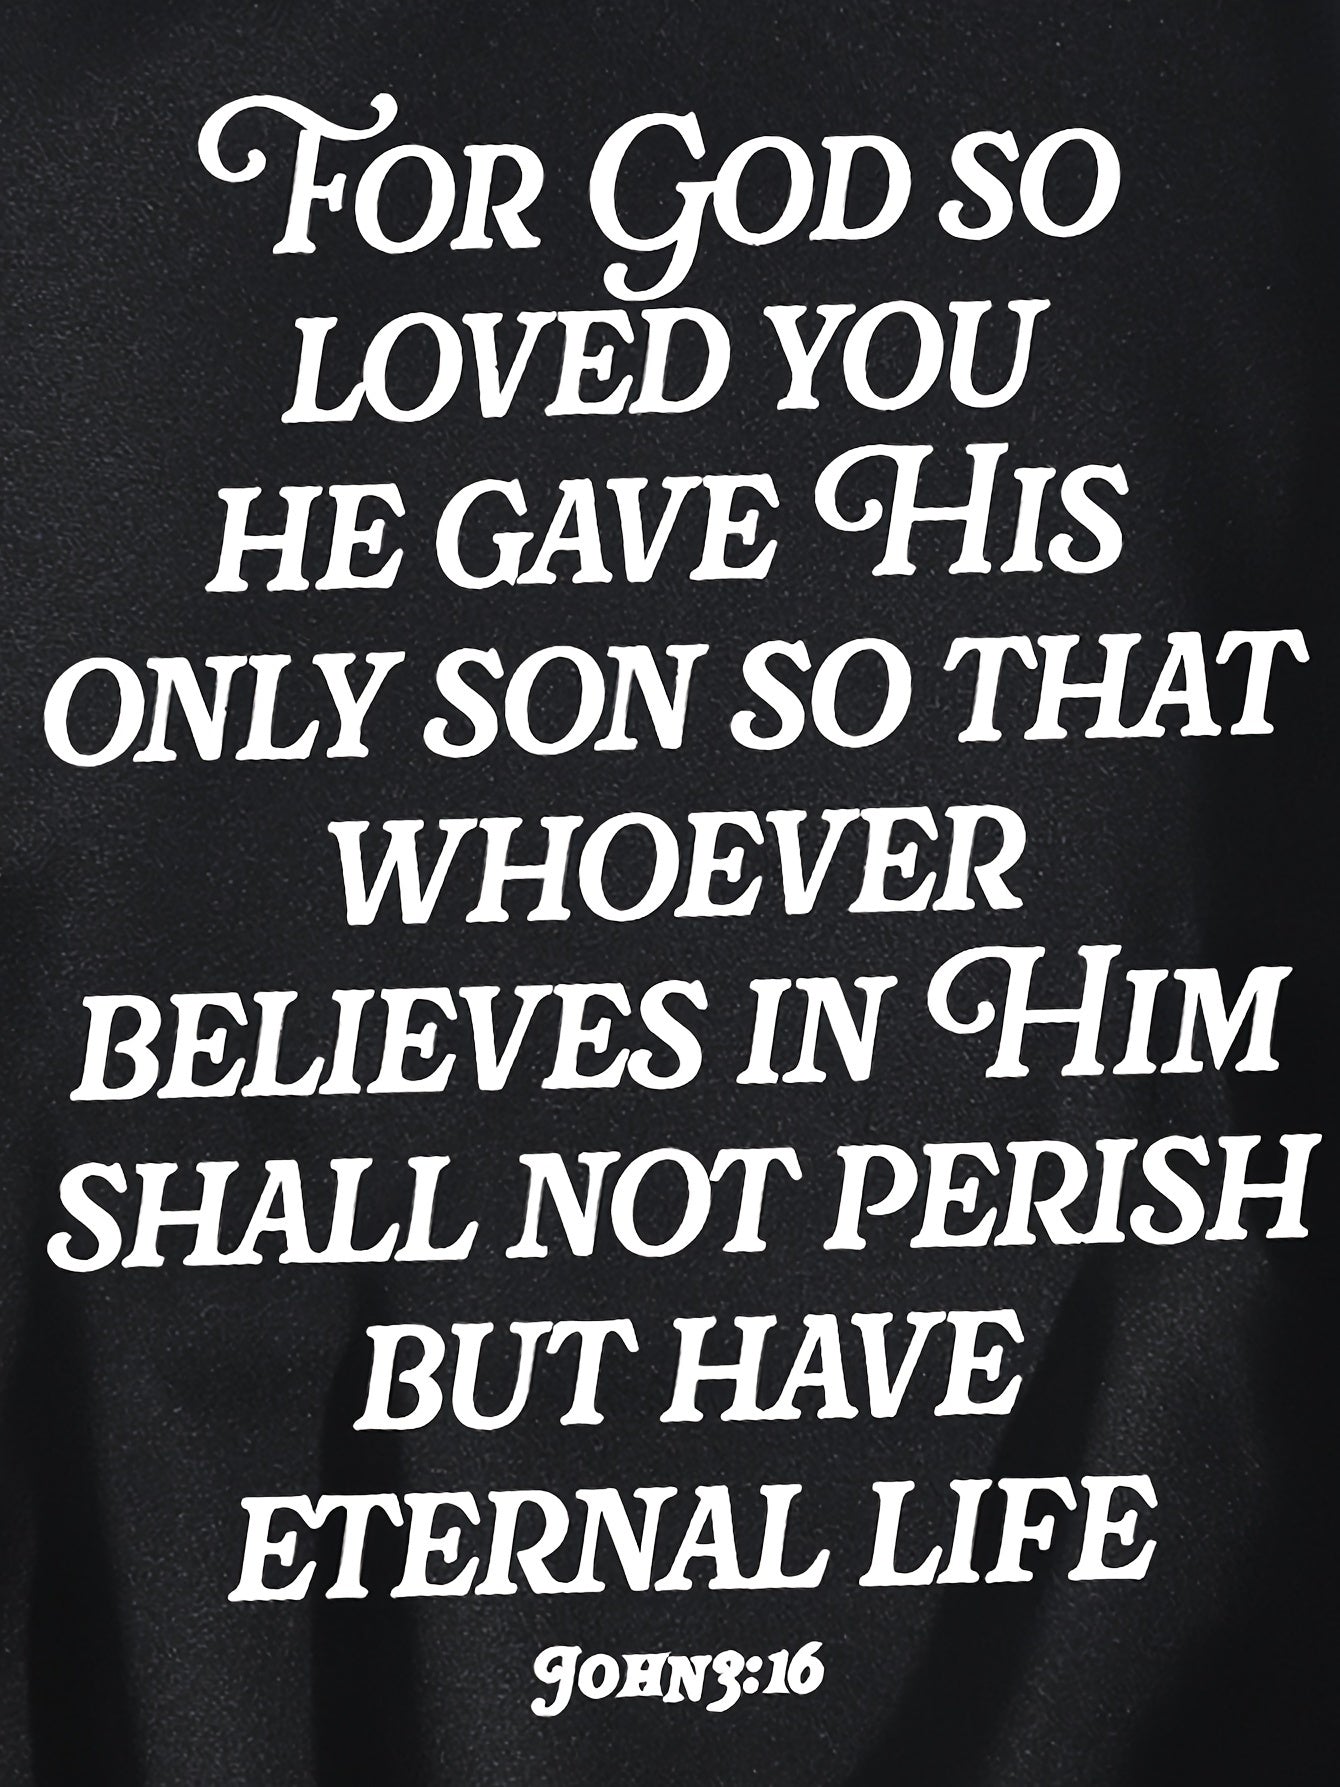 John 3:16 God So Loved You Plus Size Women's Christian Pullover Hooded Sweatshirt claimedbygoddesigns